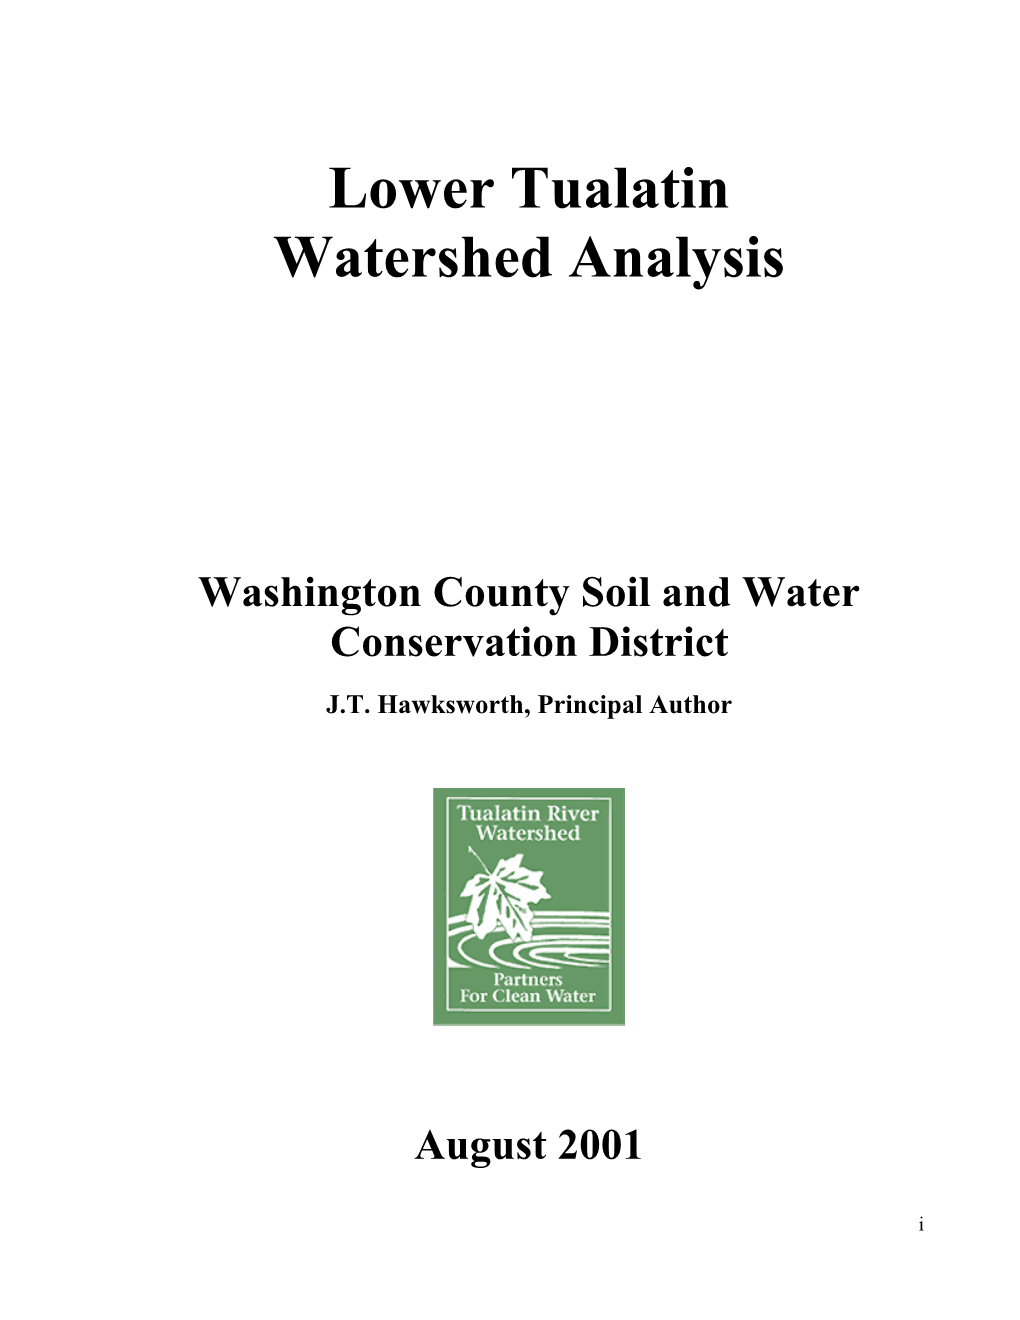 Lower Tualatin Watershed Analysis 2001